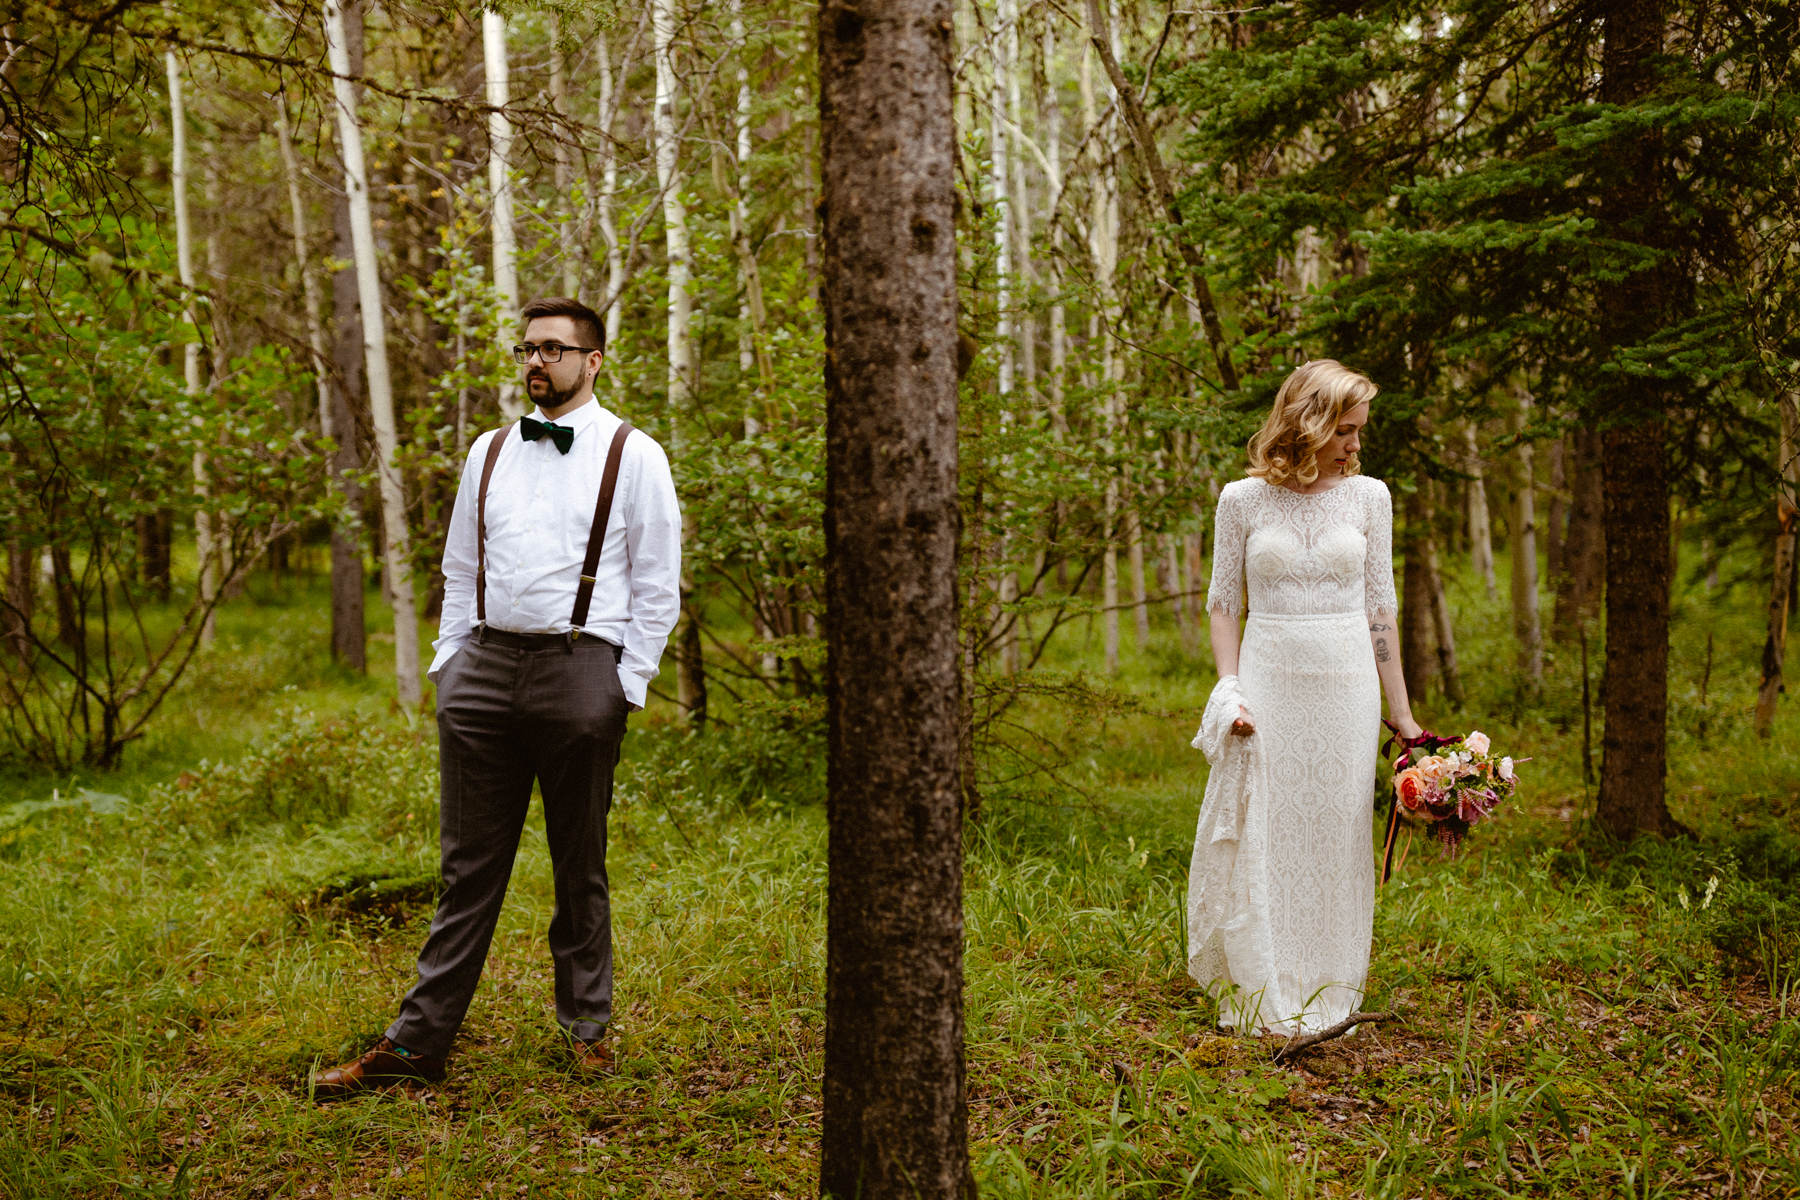 Kananaskis Wedding Photography at Pomeroy Mountain Lodge - Image  53